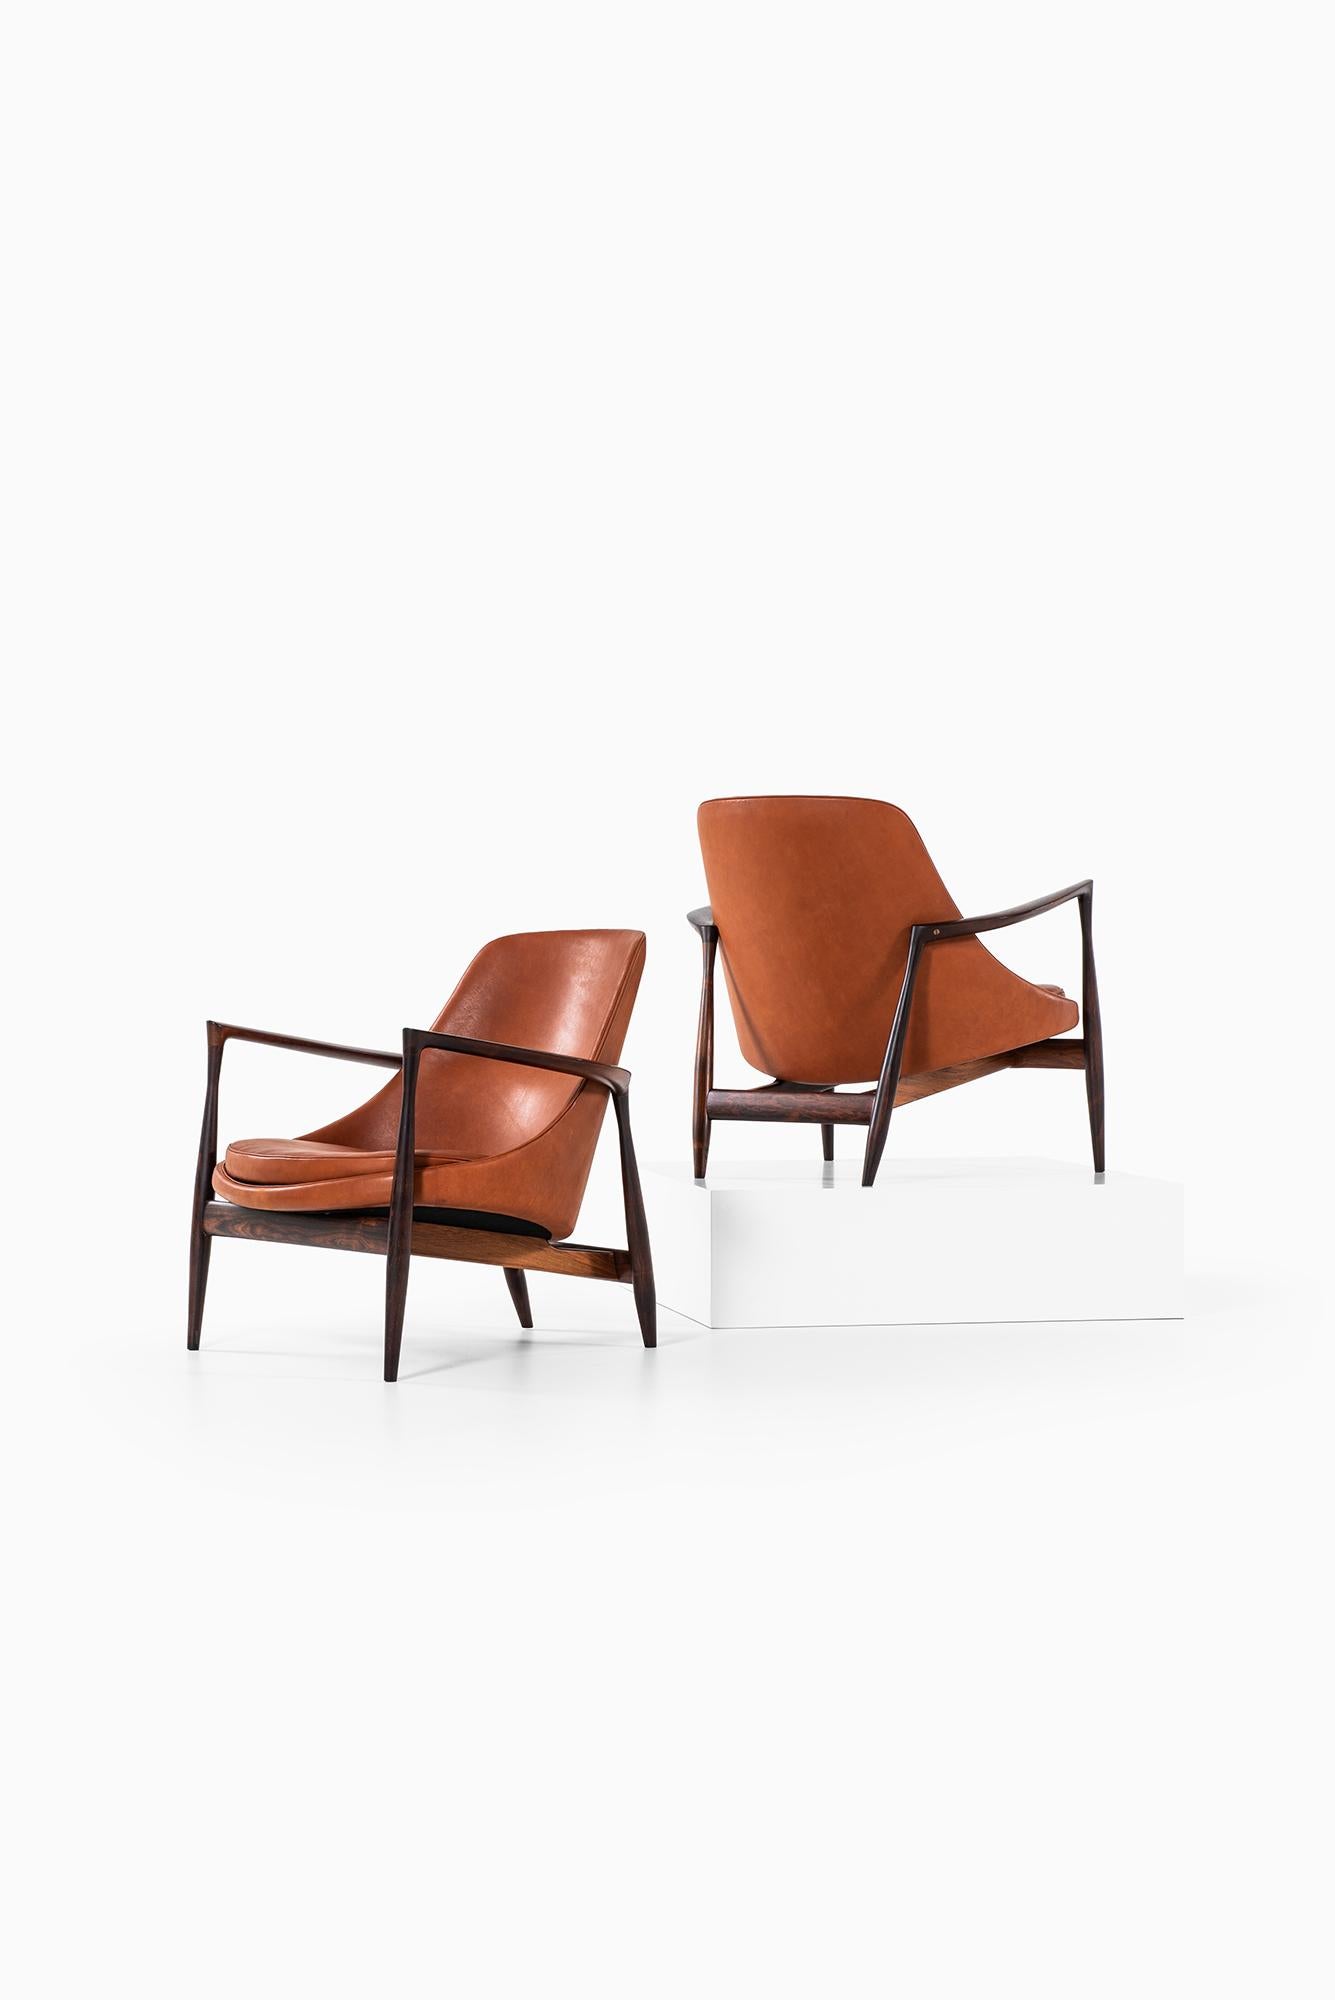 Mid-20th Century Ib Kofod-Larsen Elizabeth Easy Chairs by Christensen & Larsen in Denmark